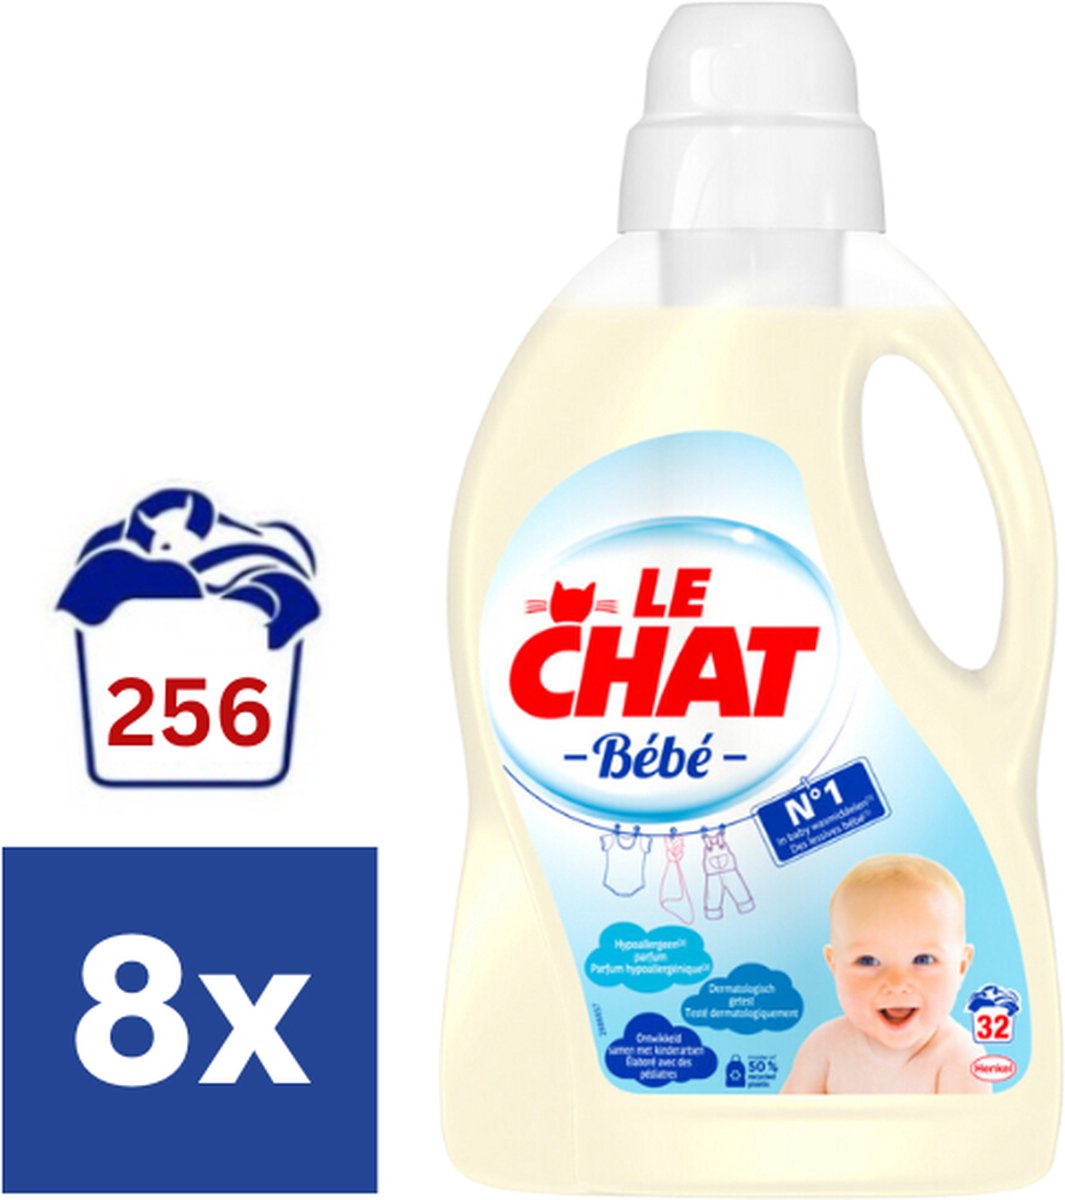 Lessive liquide spéciale bébé LE CHAT 1,6l sur